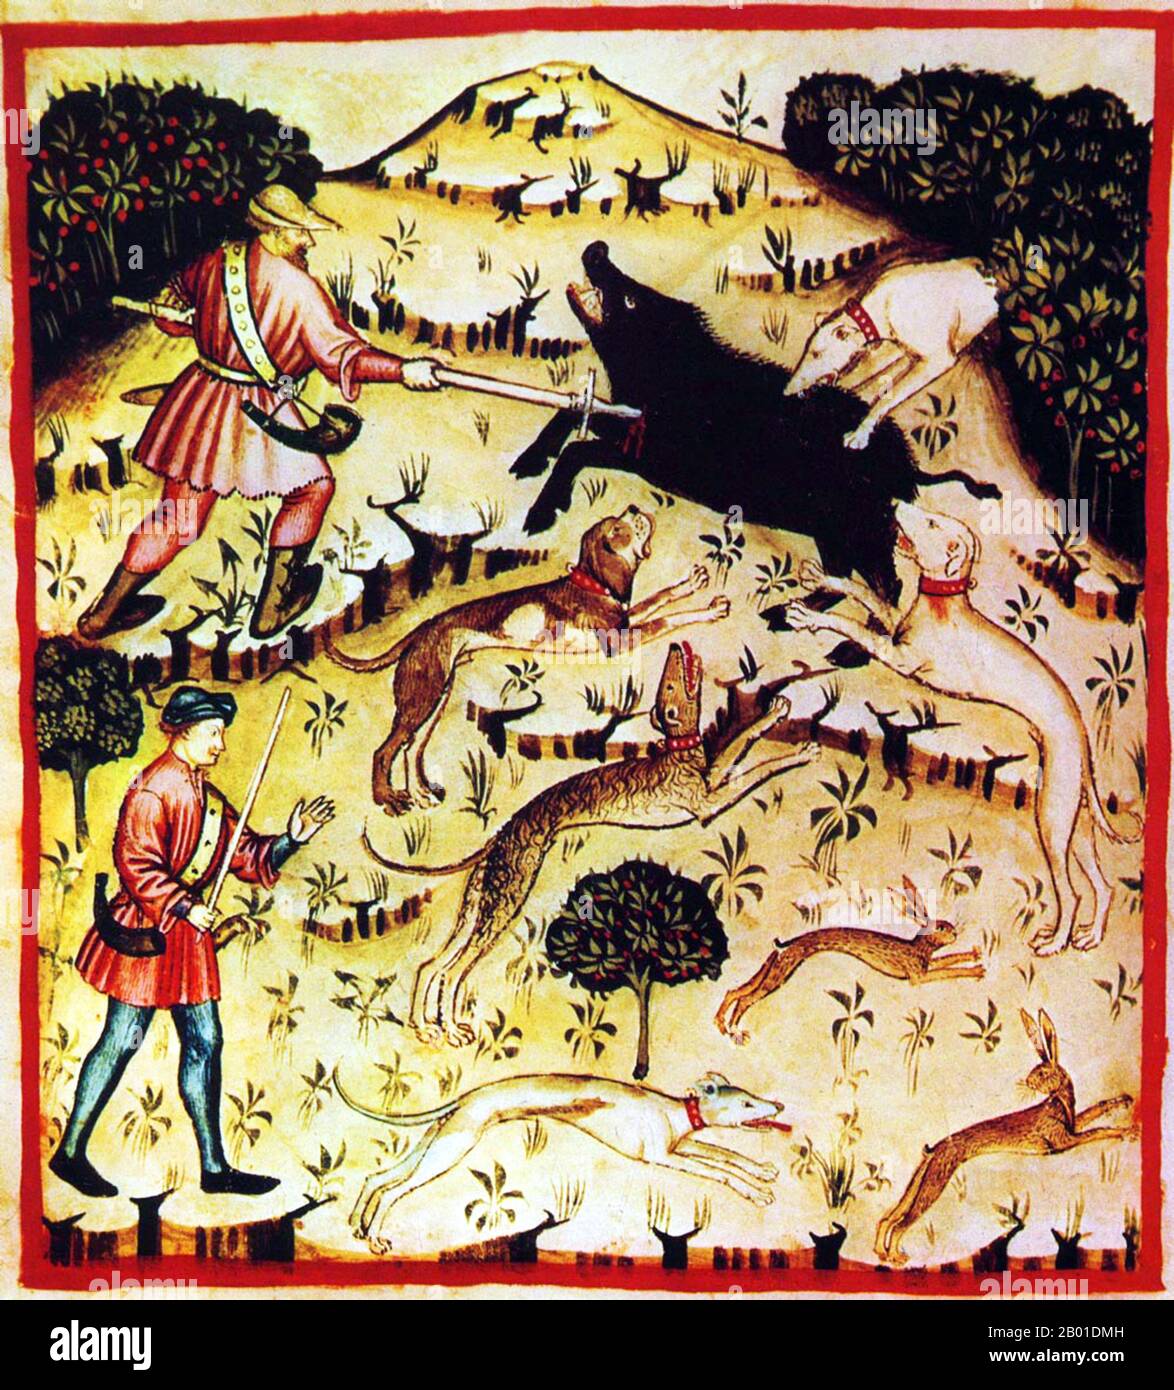 Irak/Italien: Wildschwein und Hasen mit Hunden und Speeren jagen. Illustration aus Ibn Butlans Taqwim al-sihha oder „Erhaltung der Gesundheit“, veröffentlicht in Italien als die Tacuinum Sanitatis, 14.. Jahrhundert. Das Tacuinum (manchmal Taccuinum) Sanitatis ist ein mittelalterliches Handbuch über Gesundheit und Wohlbefinden, das auf dem Taqwim al-sihha basiert, einer arabischen medizinischen Abhandlung von Ibn Butlan aus Bagdad aus dem 11. Jahrhundert. Ibn Butlân war ein christlicher Arzt, geboren in Bagdad und starb 1068. Er legte sechs Elemente fest, die notwendig sind, um die tägliche Gesundheit zu erhalten. Stockfoto